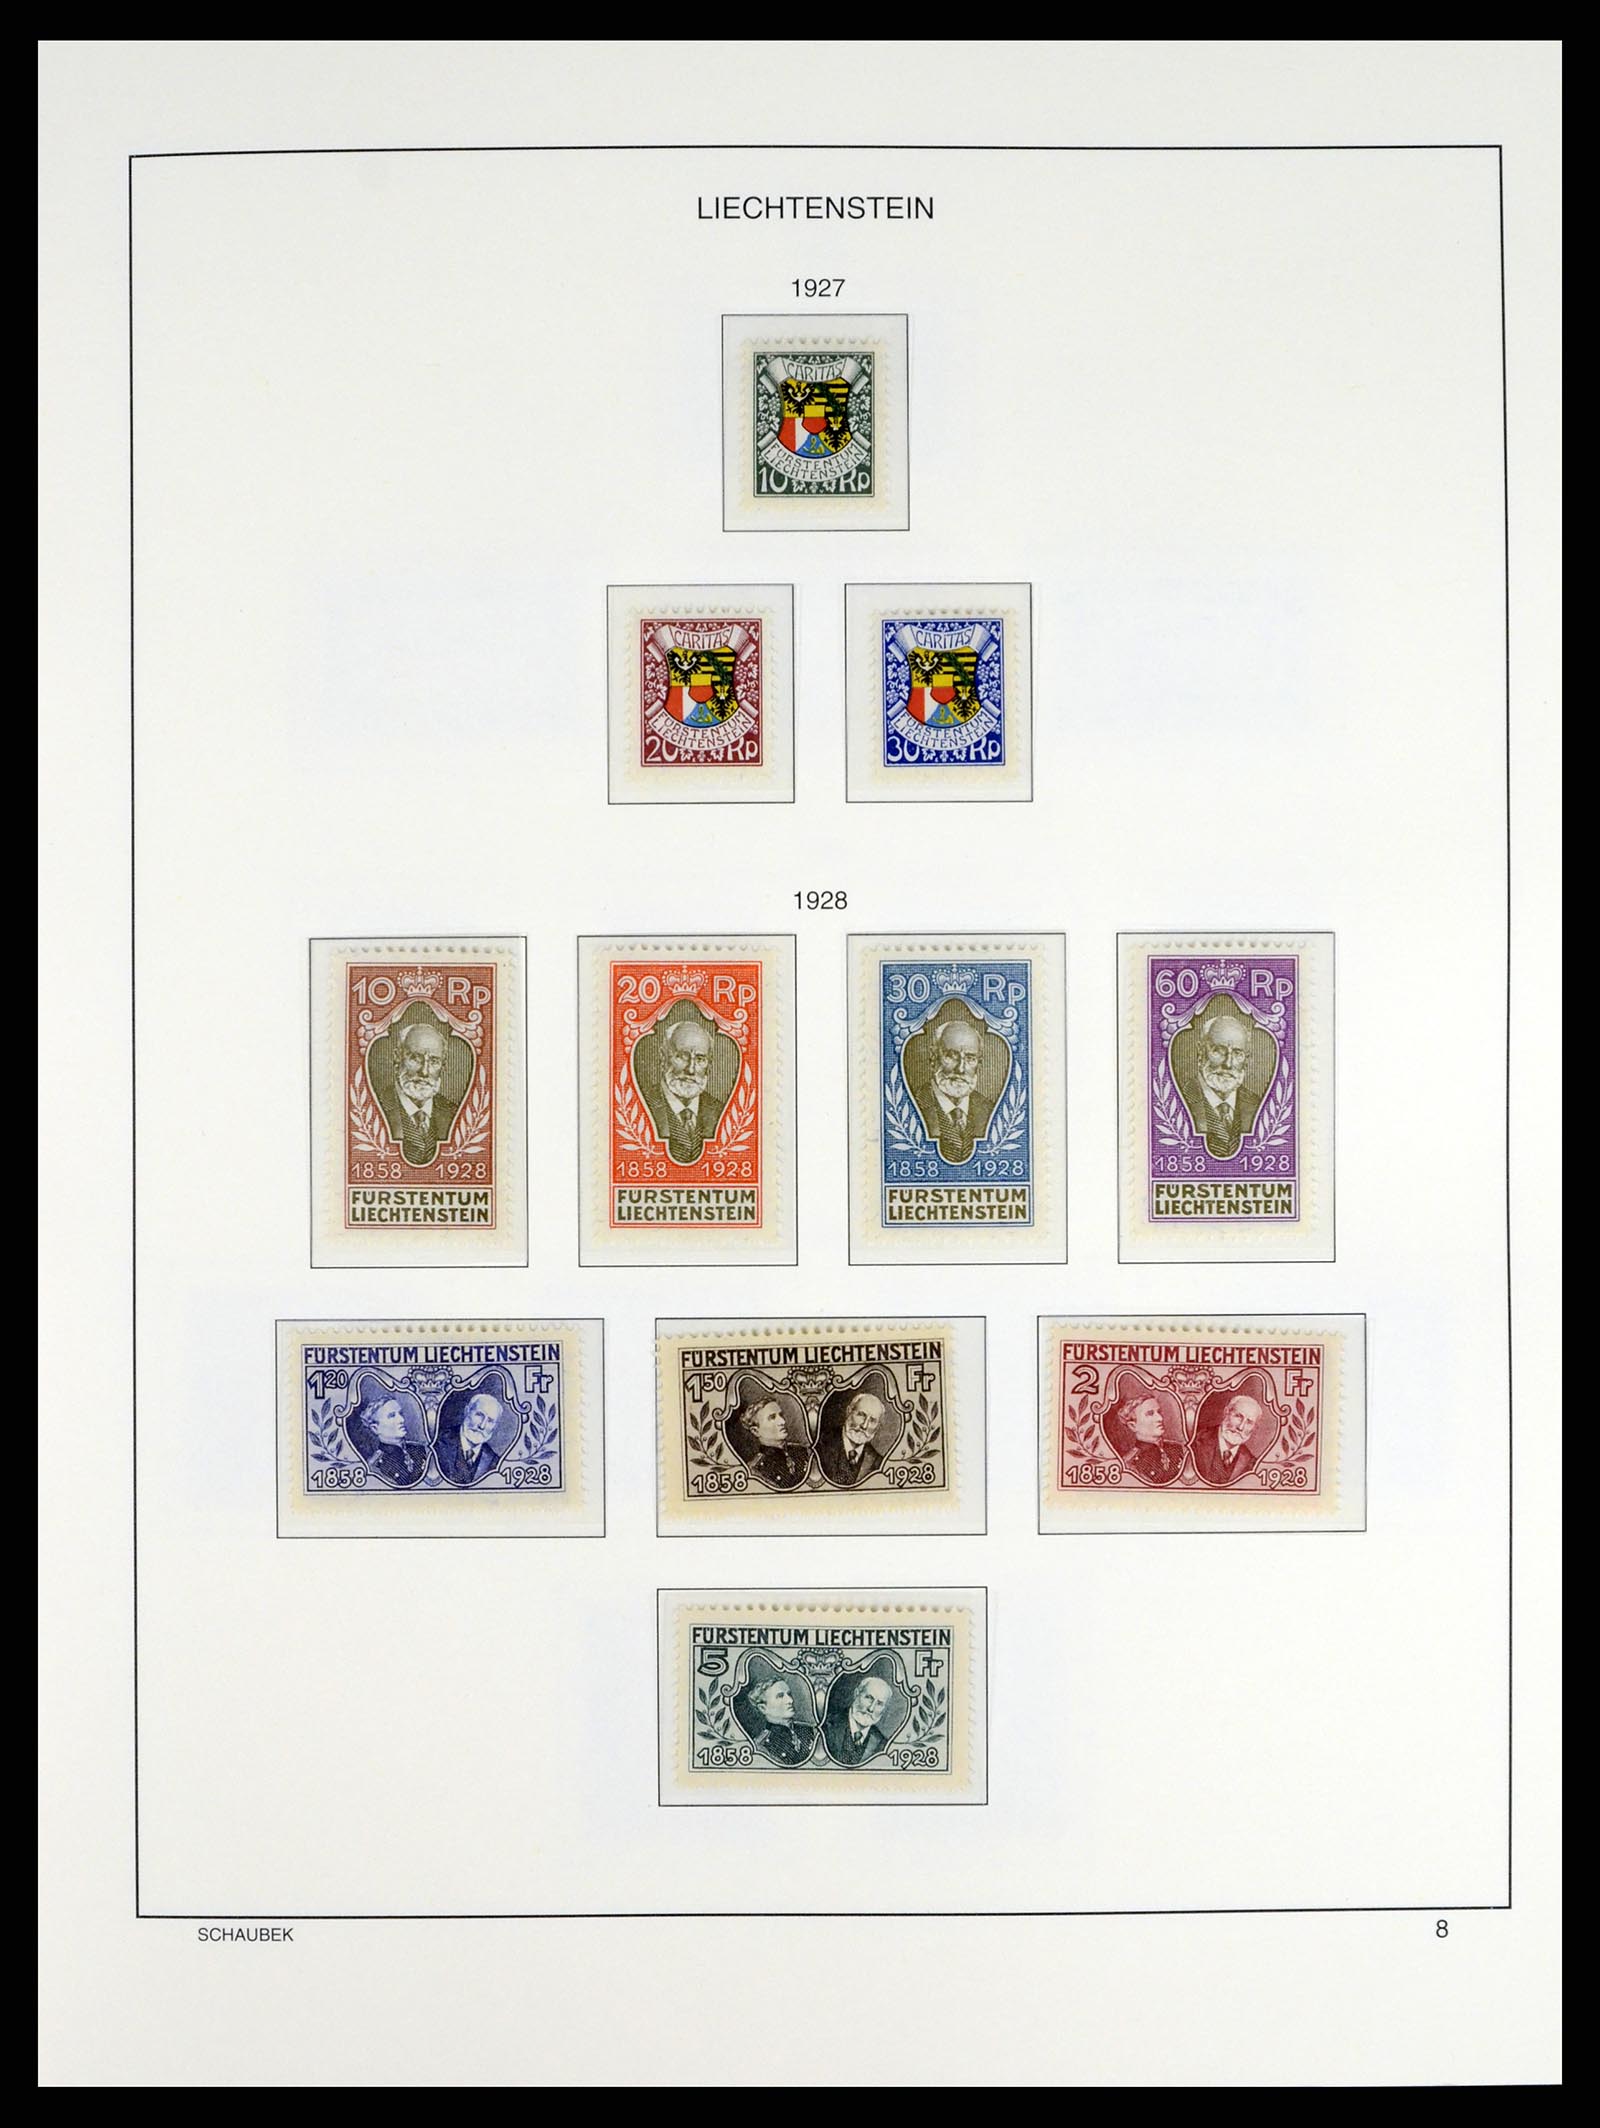 37547 008 - Stamp collection 37547 Liechtenstein 1912-2011.